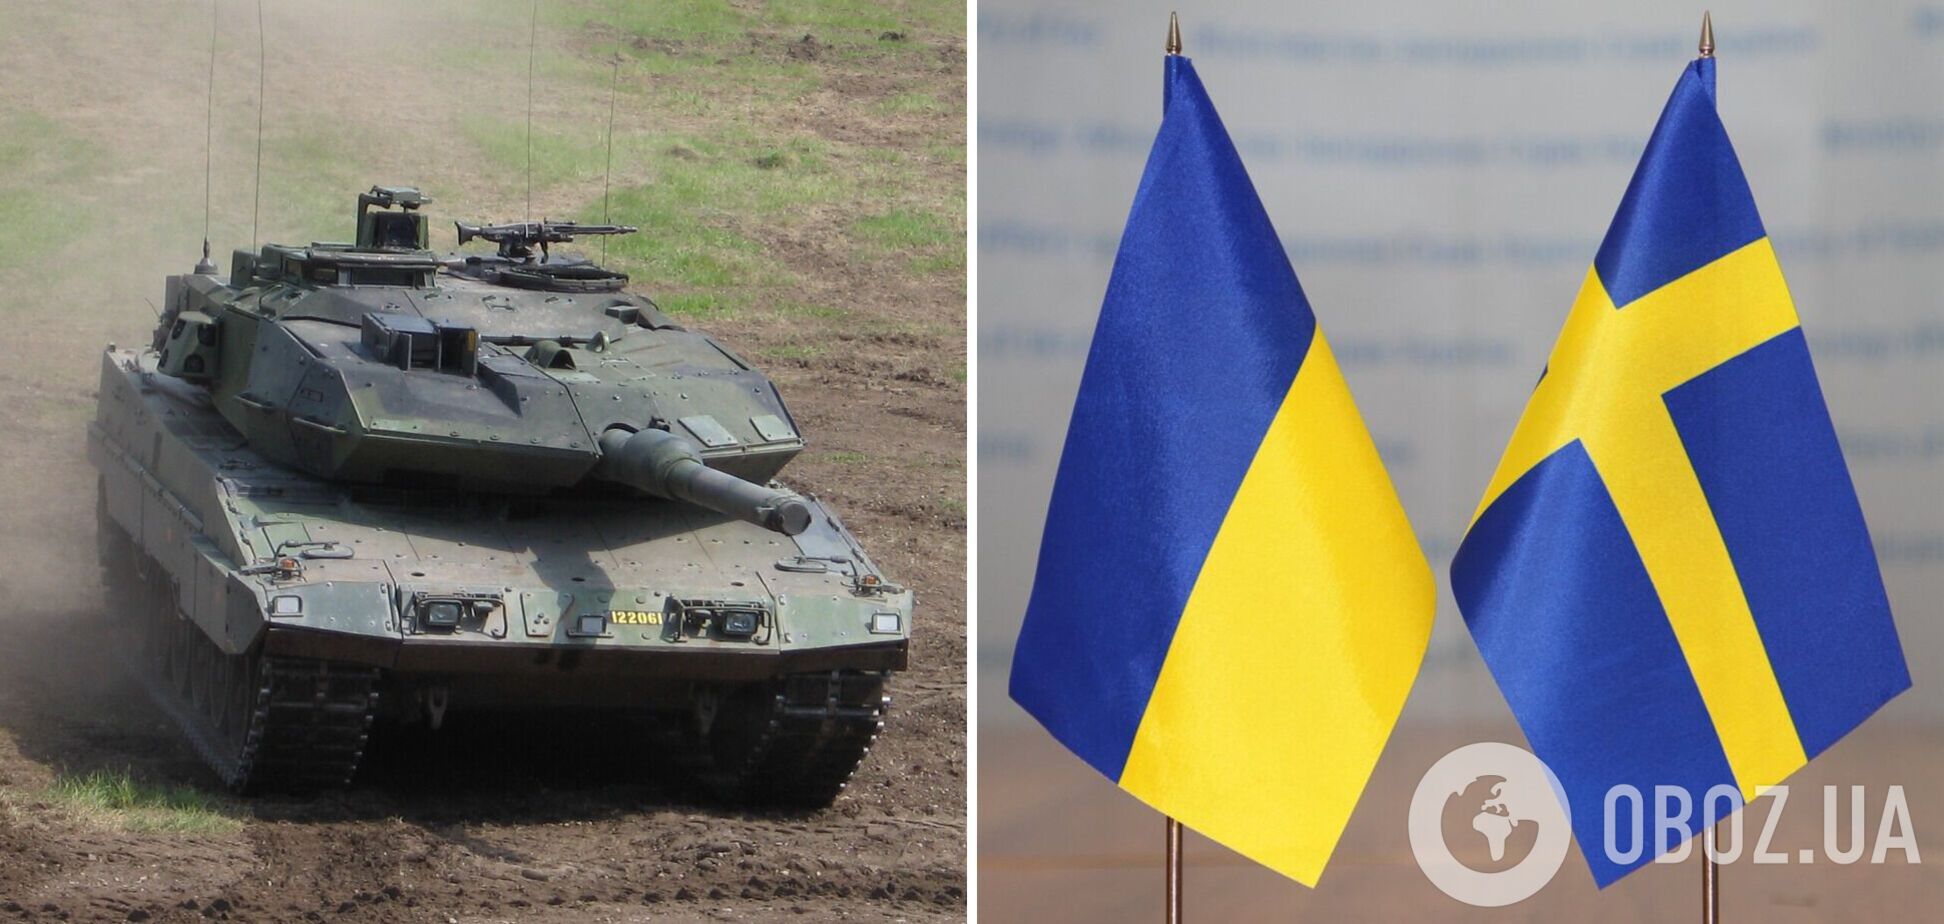 Швеция рассматривает вопрос о передаче Украине танков Stridsvagn 122, – министр обороны